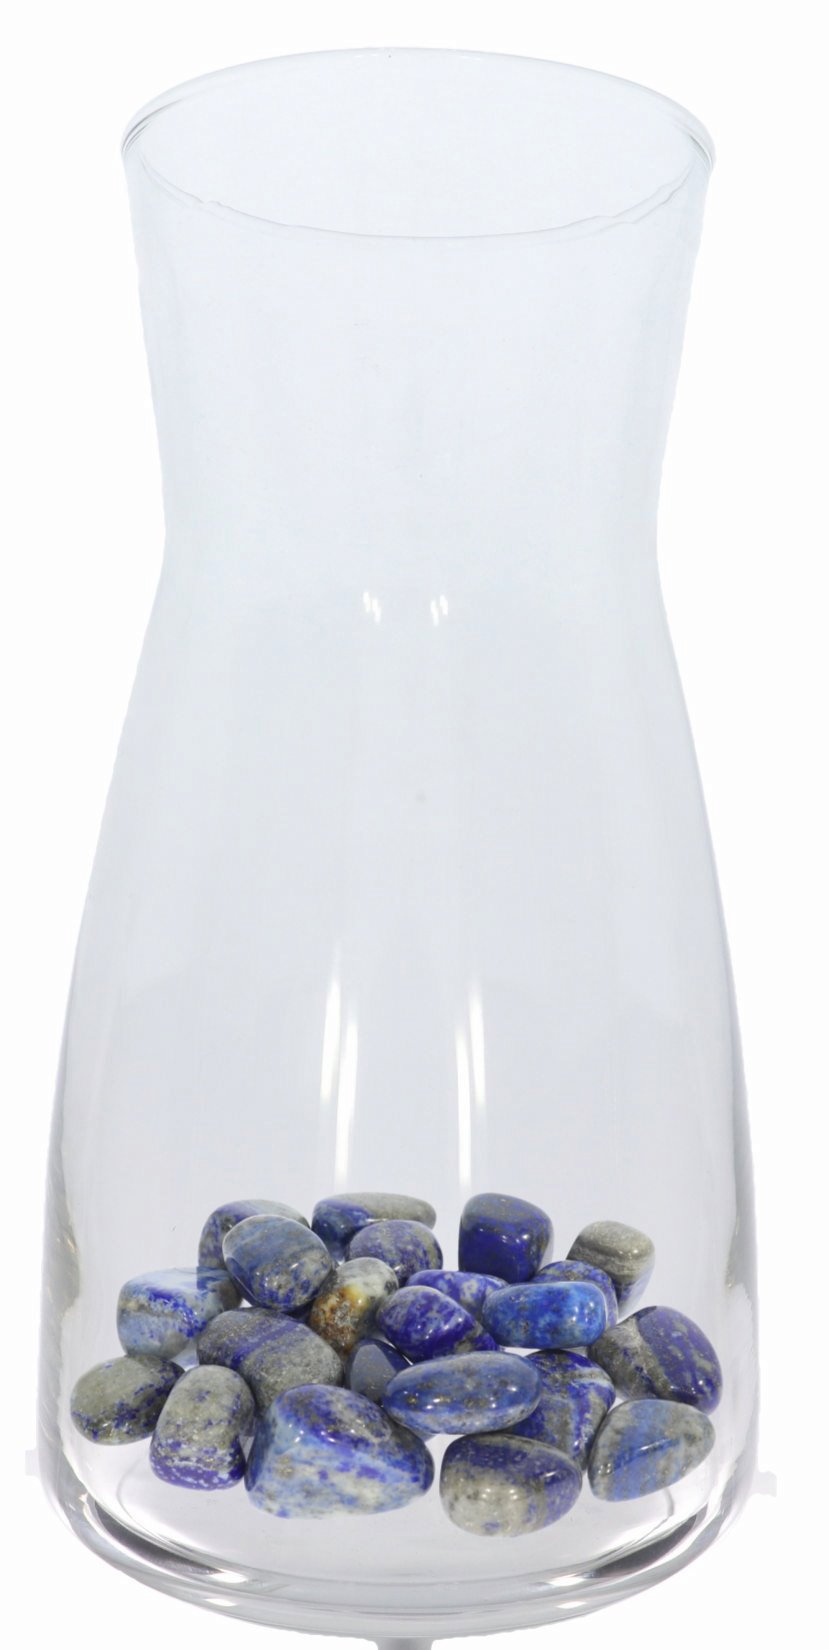 Lapis Lazuli Trommelsteine & Glaskaraffe - Energetisierung von Wasser